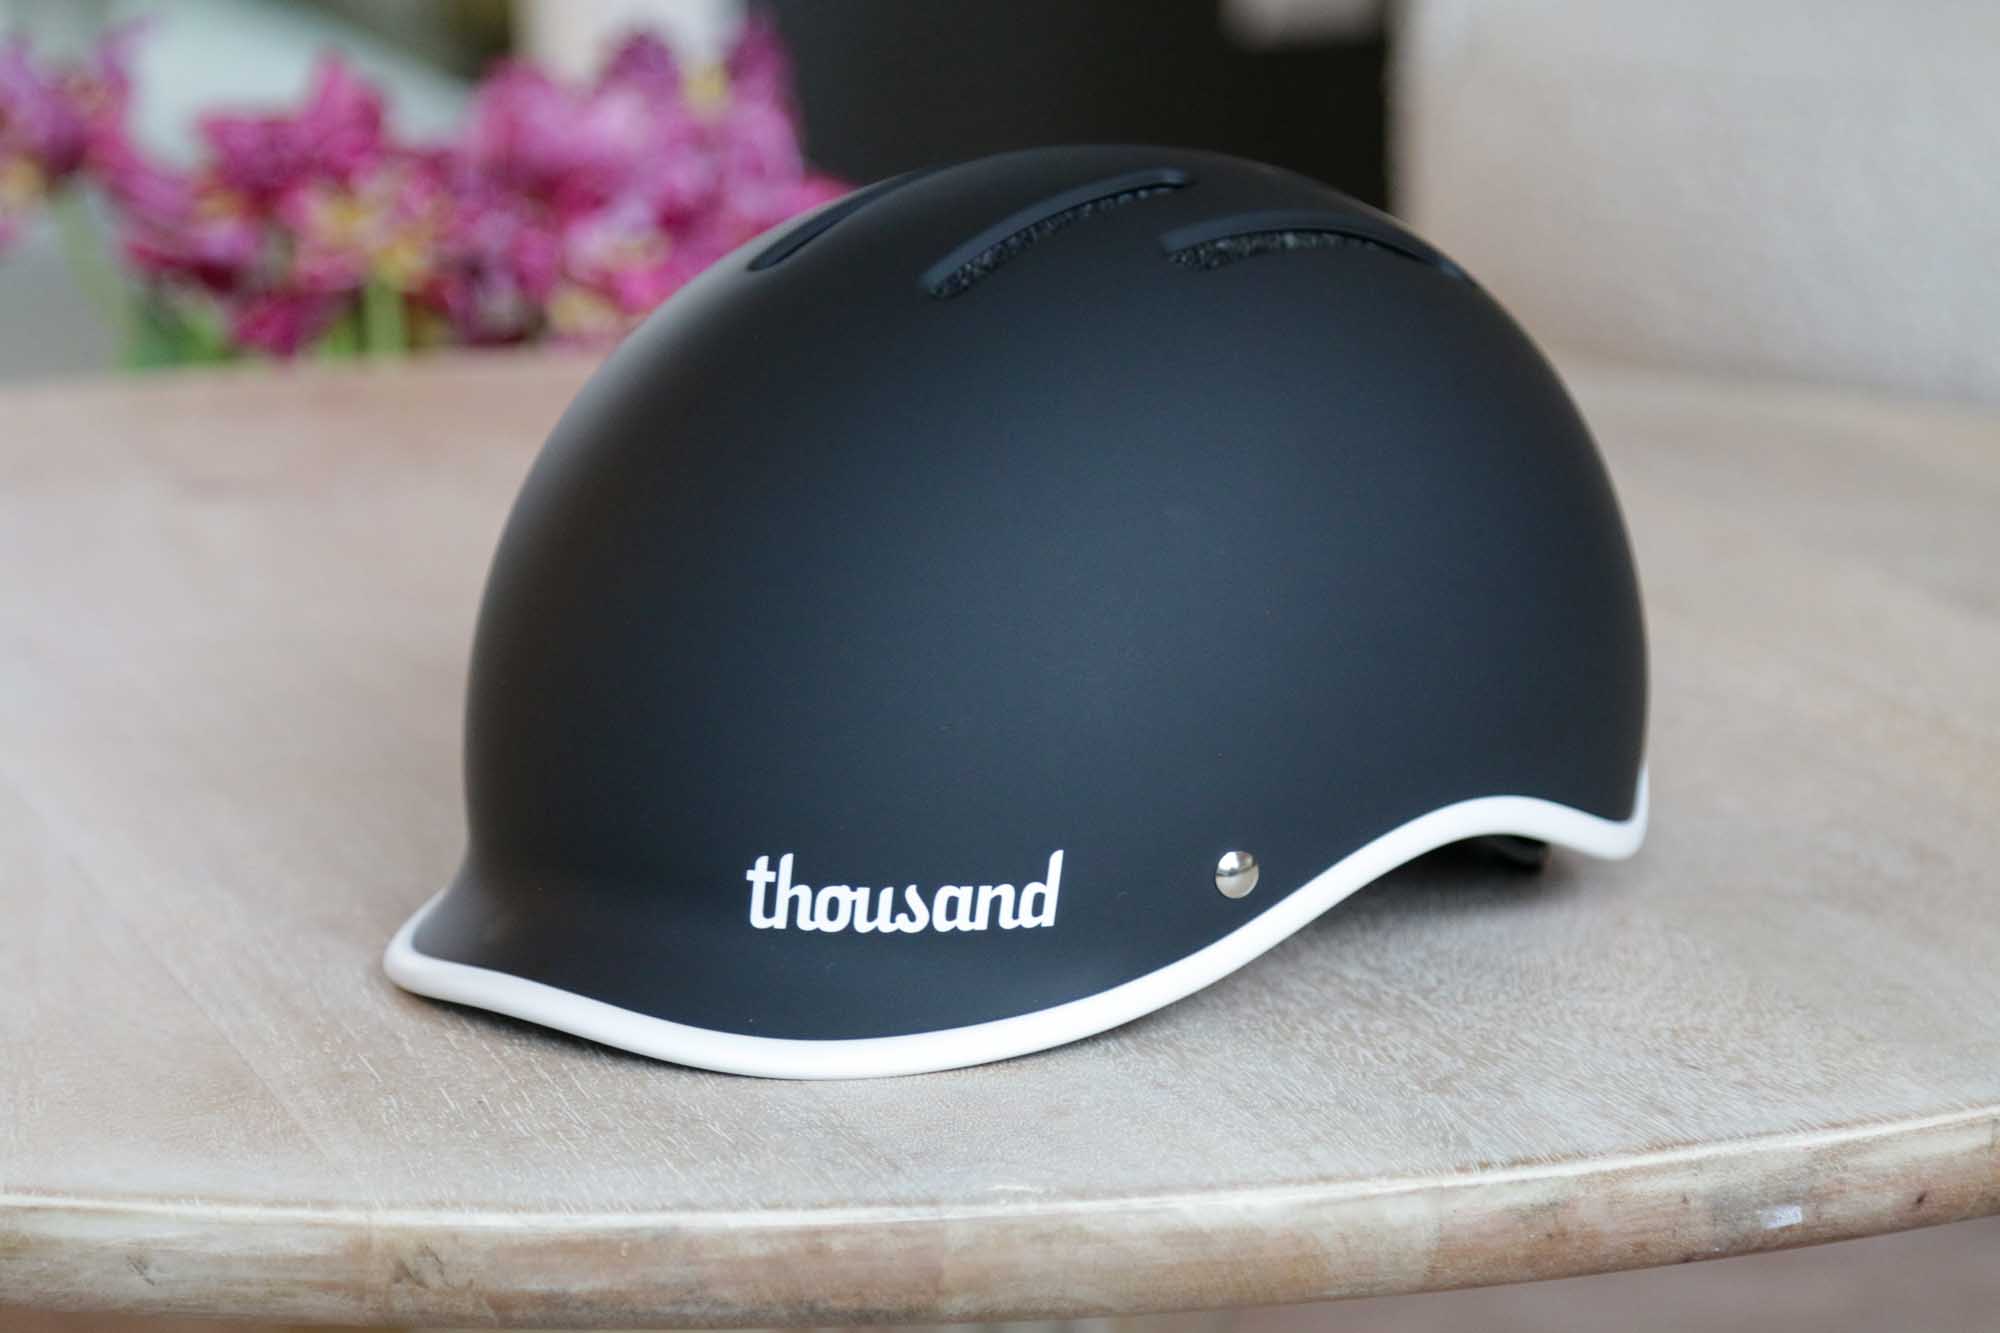 Thousand Heritage 2.0 helmet